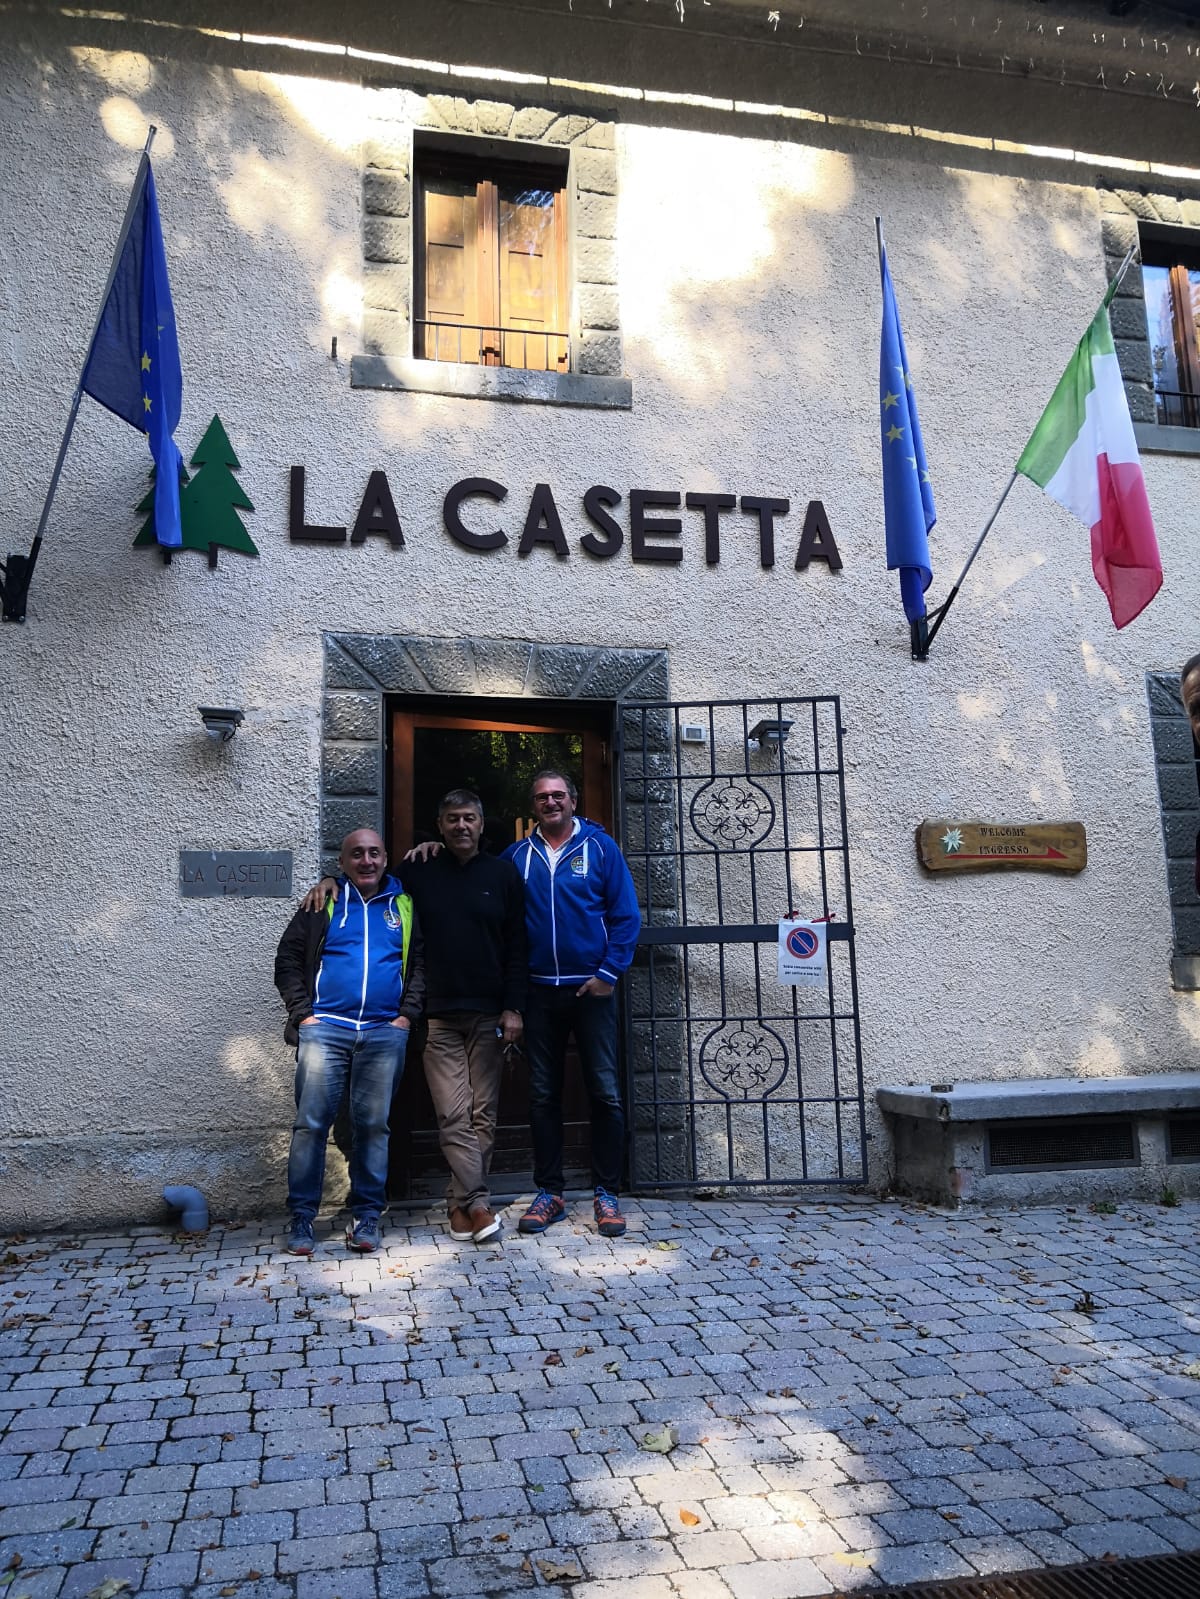 Il sindaco Murzi e i consiglieri Mattugini e Trapasso in visita alla Casetta all’Abetone